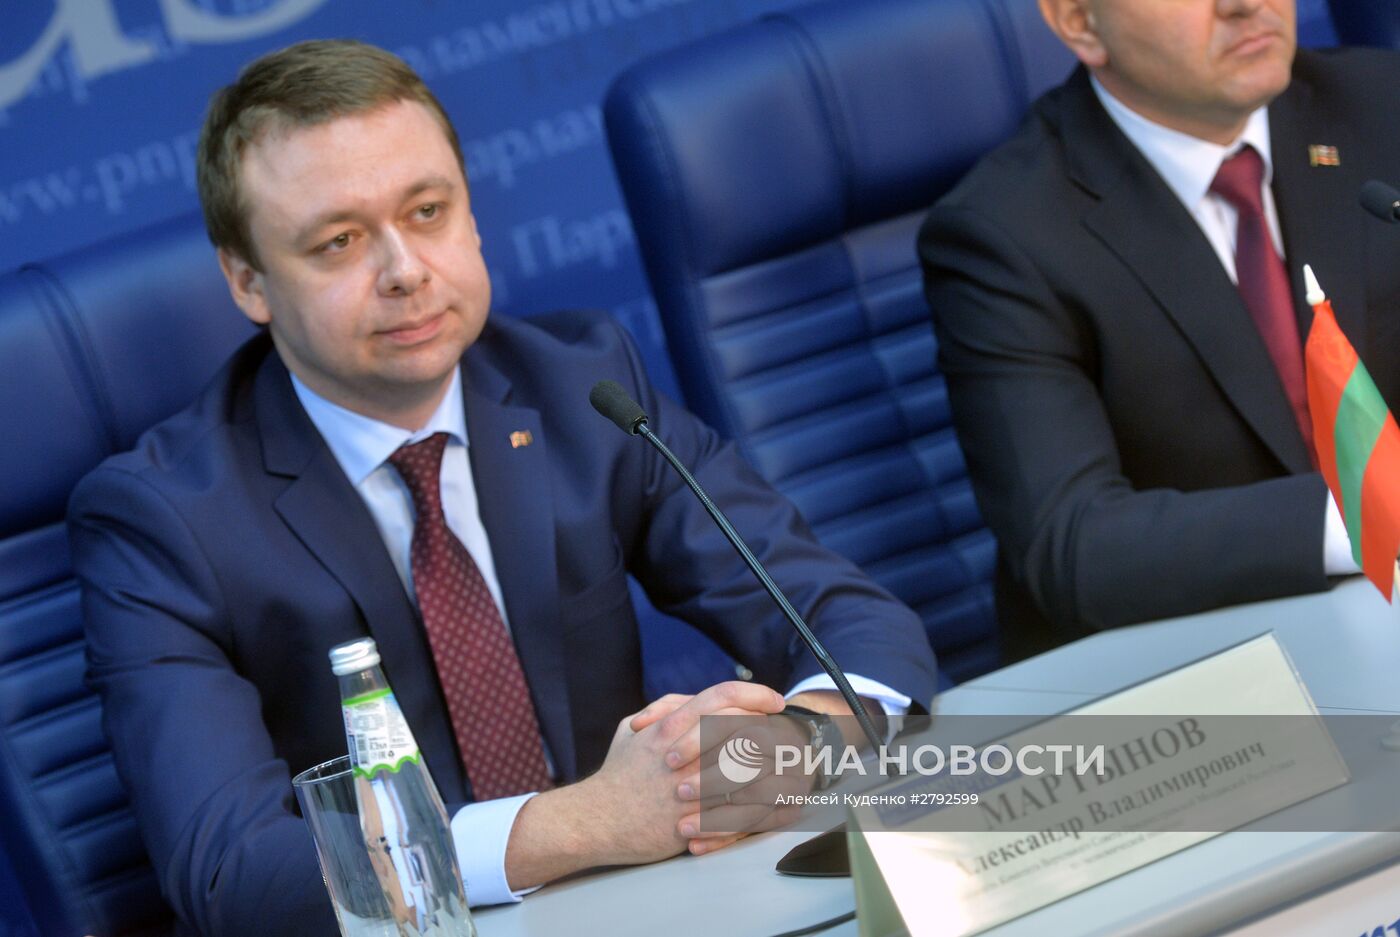 Пресс-конференция на тему: "Приднестровье: как выжить в условиях экономической блокады?"